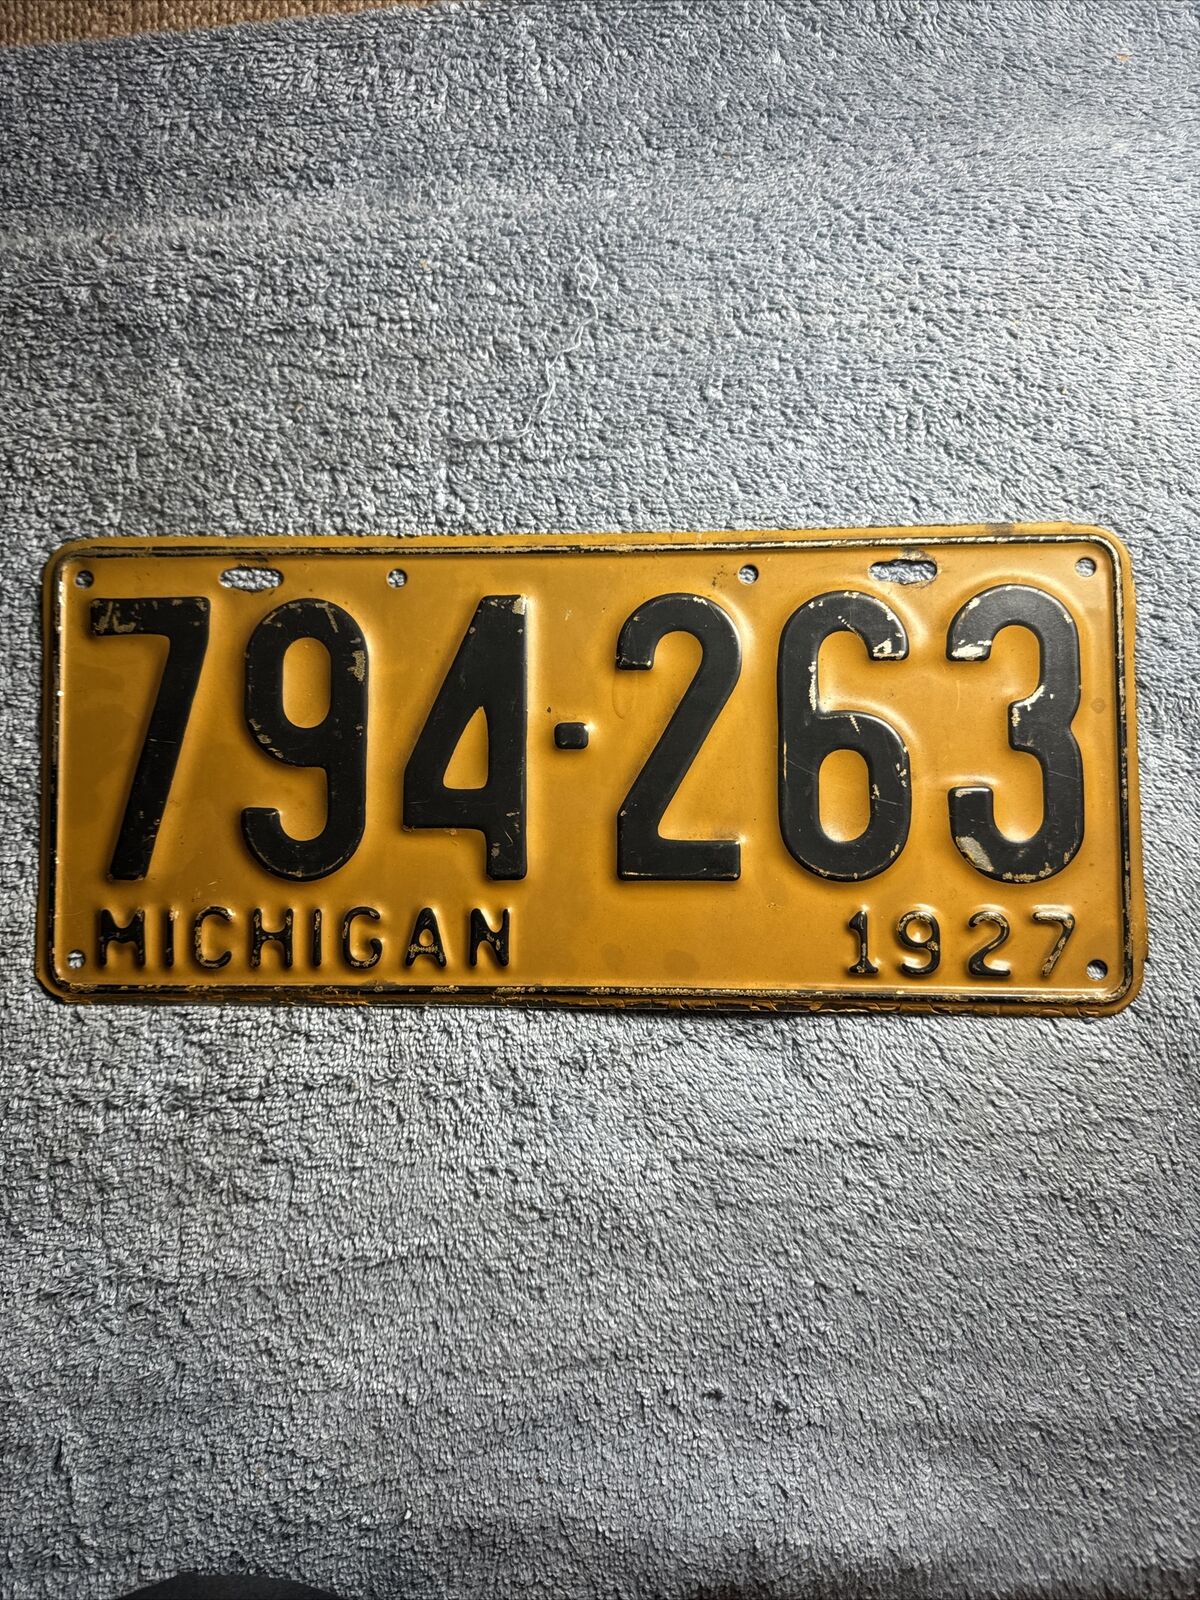 1927 Michigan License Plate 794-263